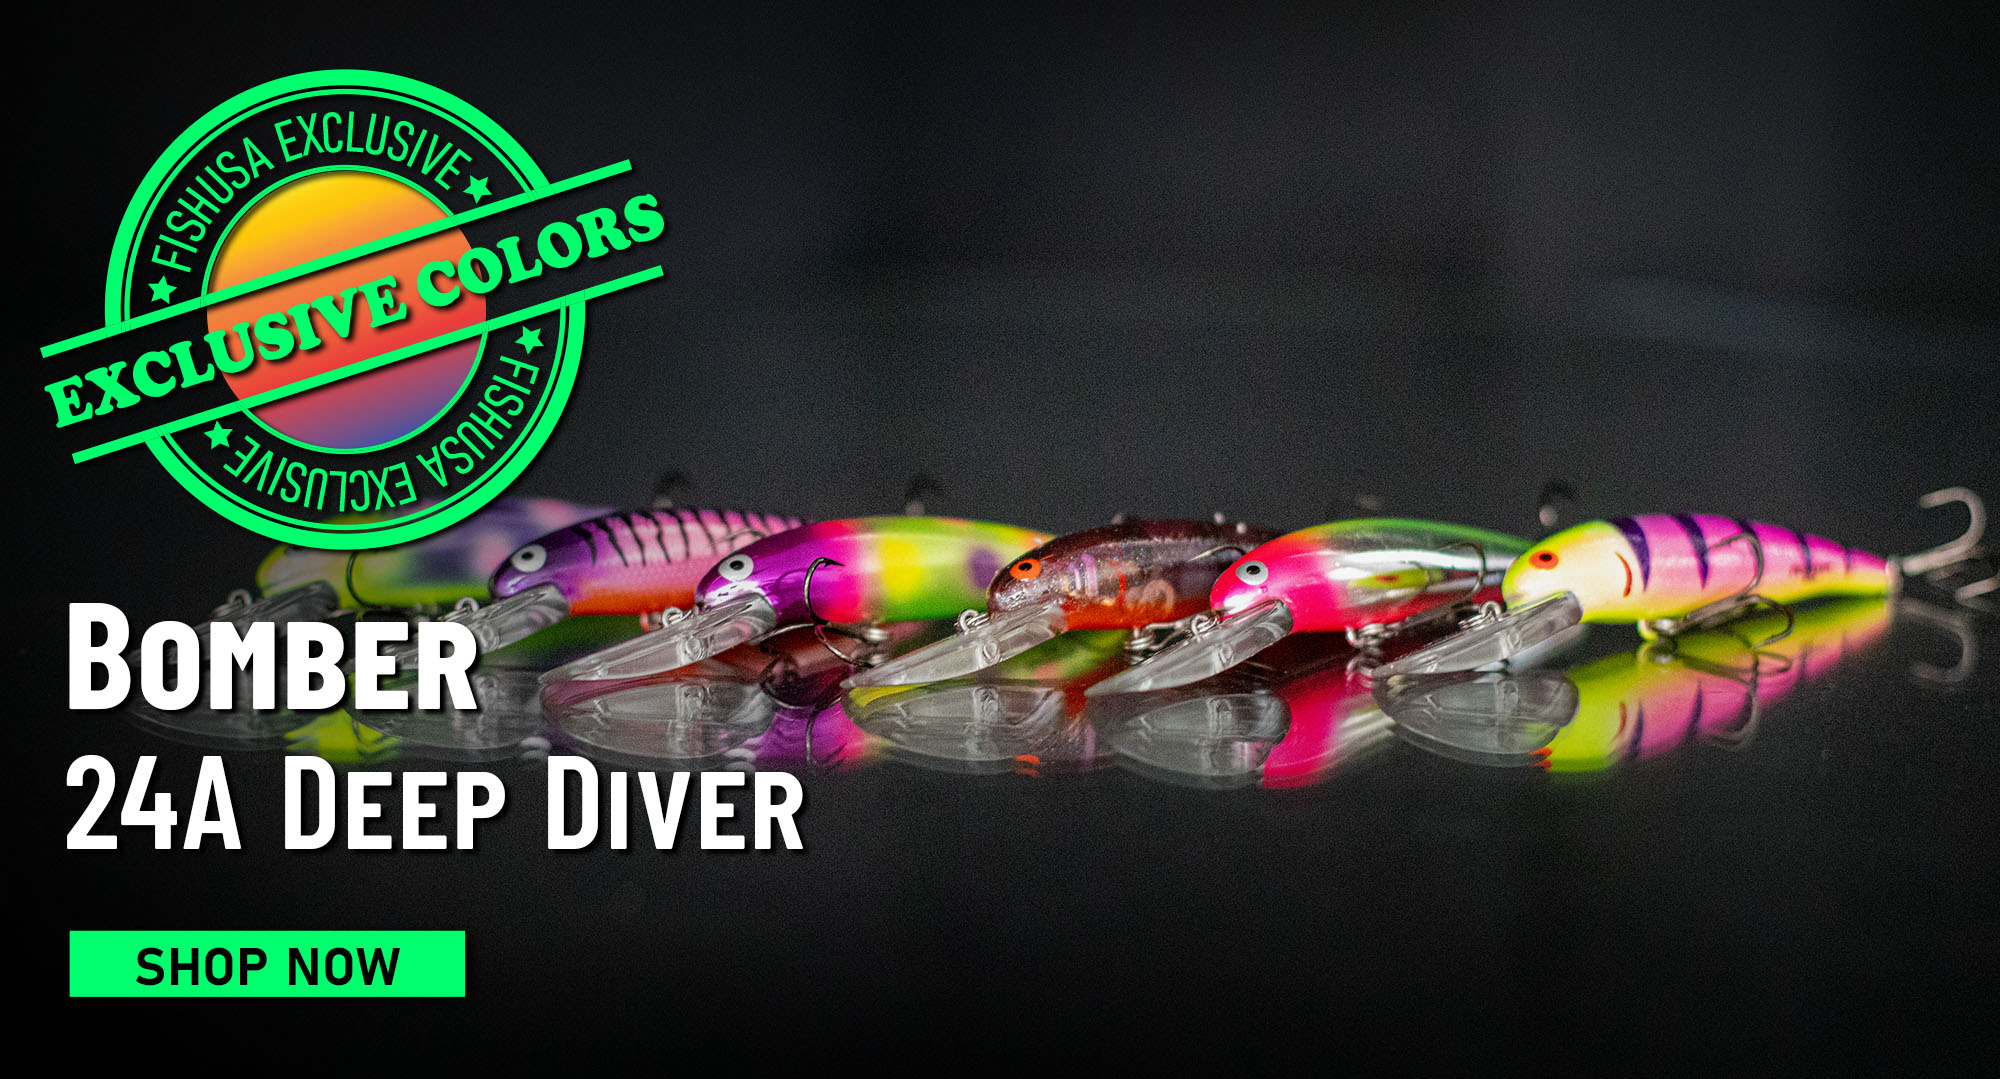 FishUSA Exclusive Colors! Bomber 24 A Deep Diver Shop Now